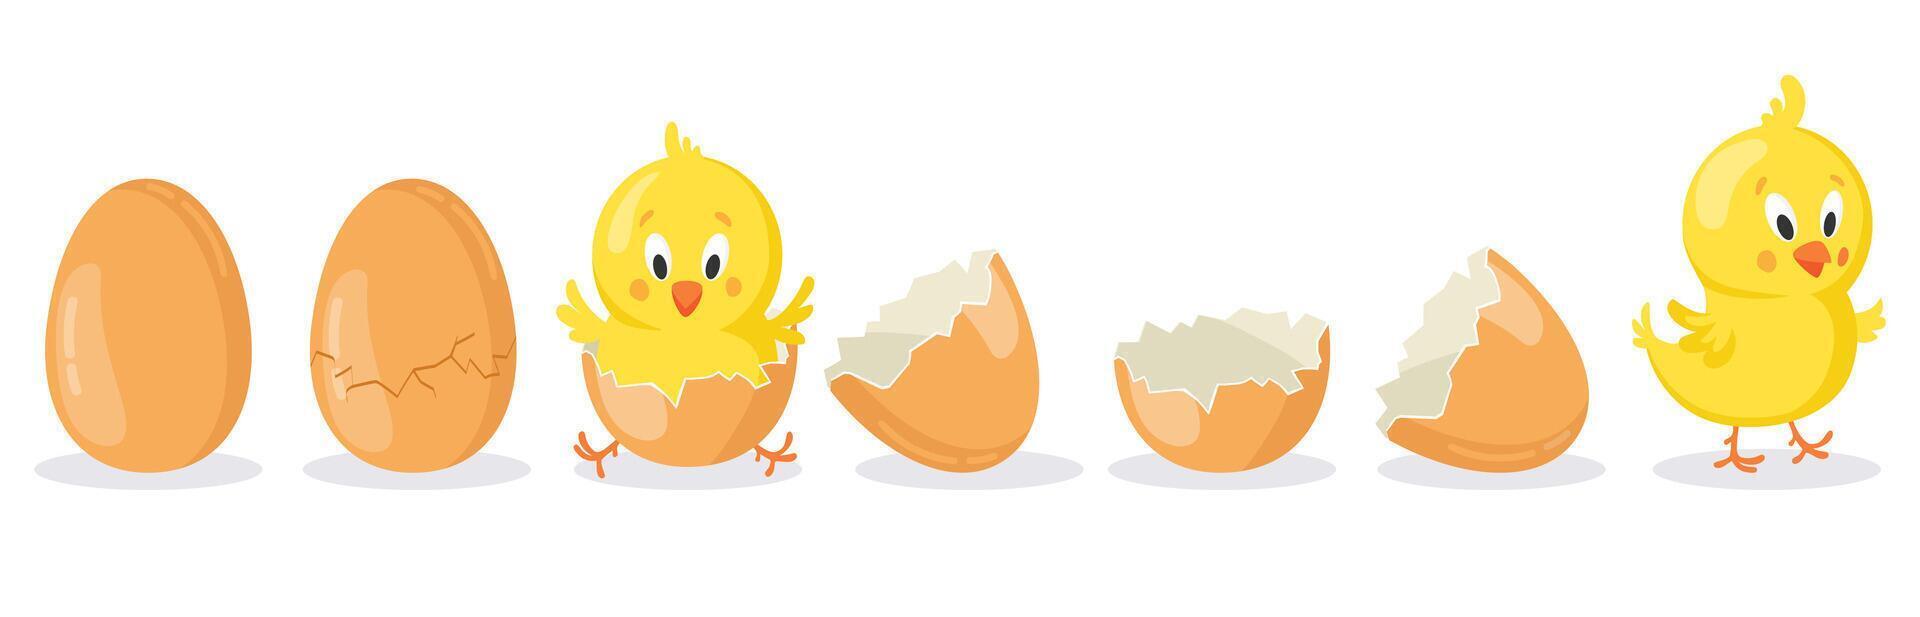 dibujos animados eclosionado Pascua de Resurrección huevo. agrietado pollo huevos con linda pollo mascota, recién nacido bebé polluelo pájaro eclosión desde huevo vector ilustración conjunto